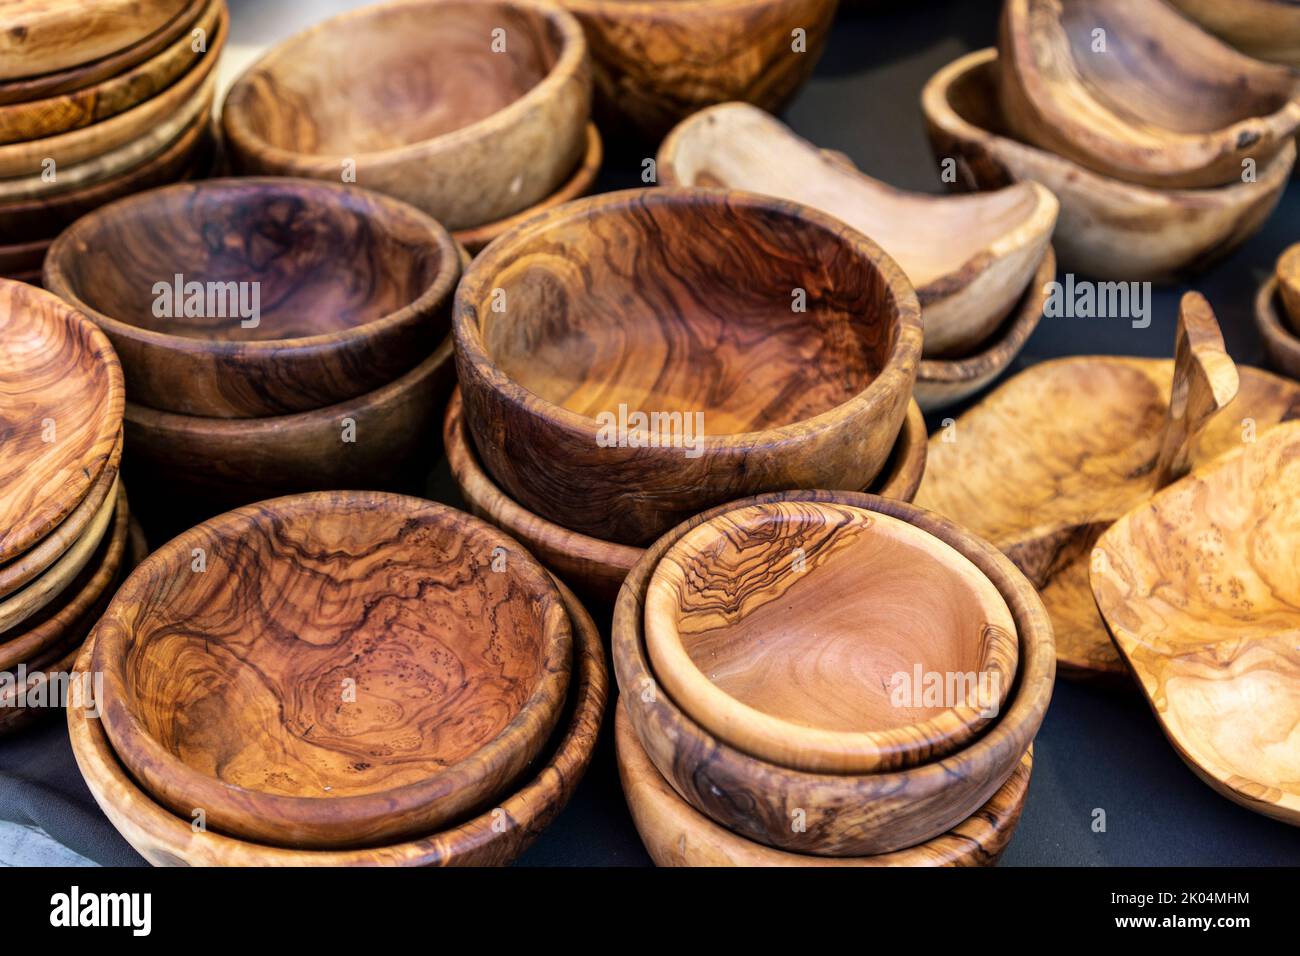 Bowls made of olive tree wood at the market in Waisenhausplatz (Markt Waisenhausplatz), Bern, Switzerland Stock Photo